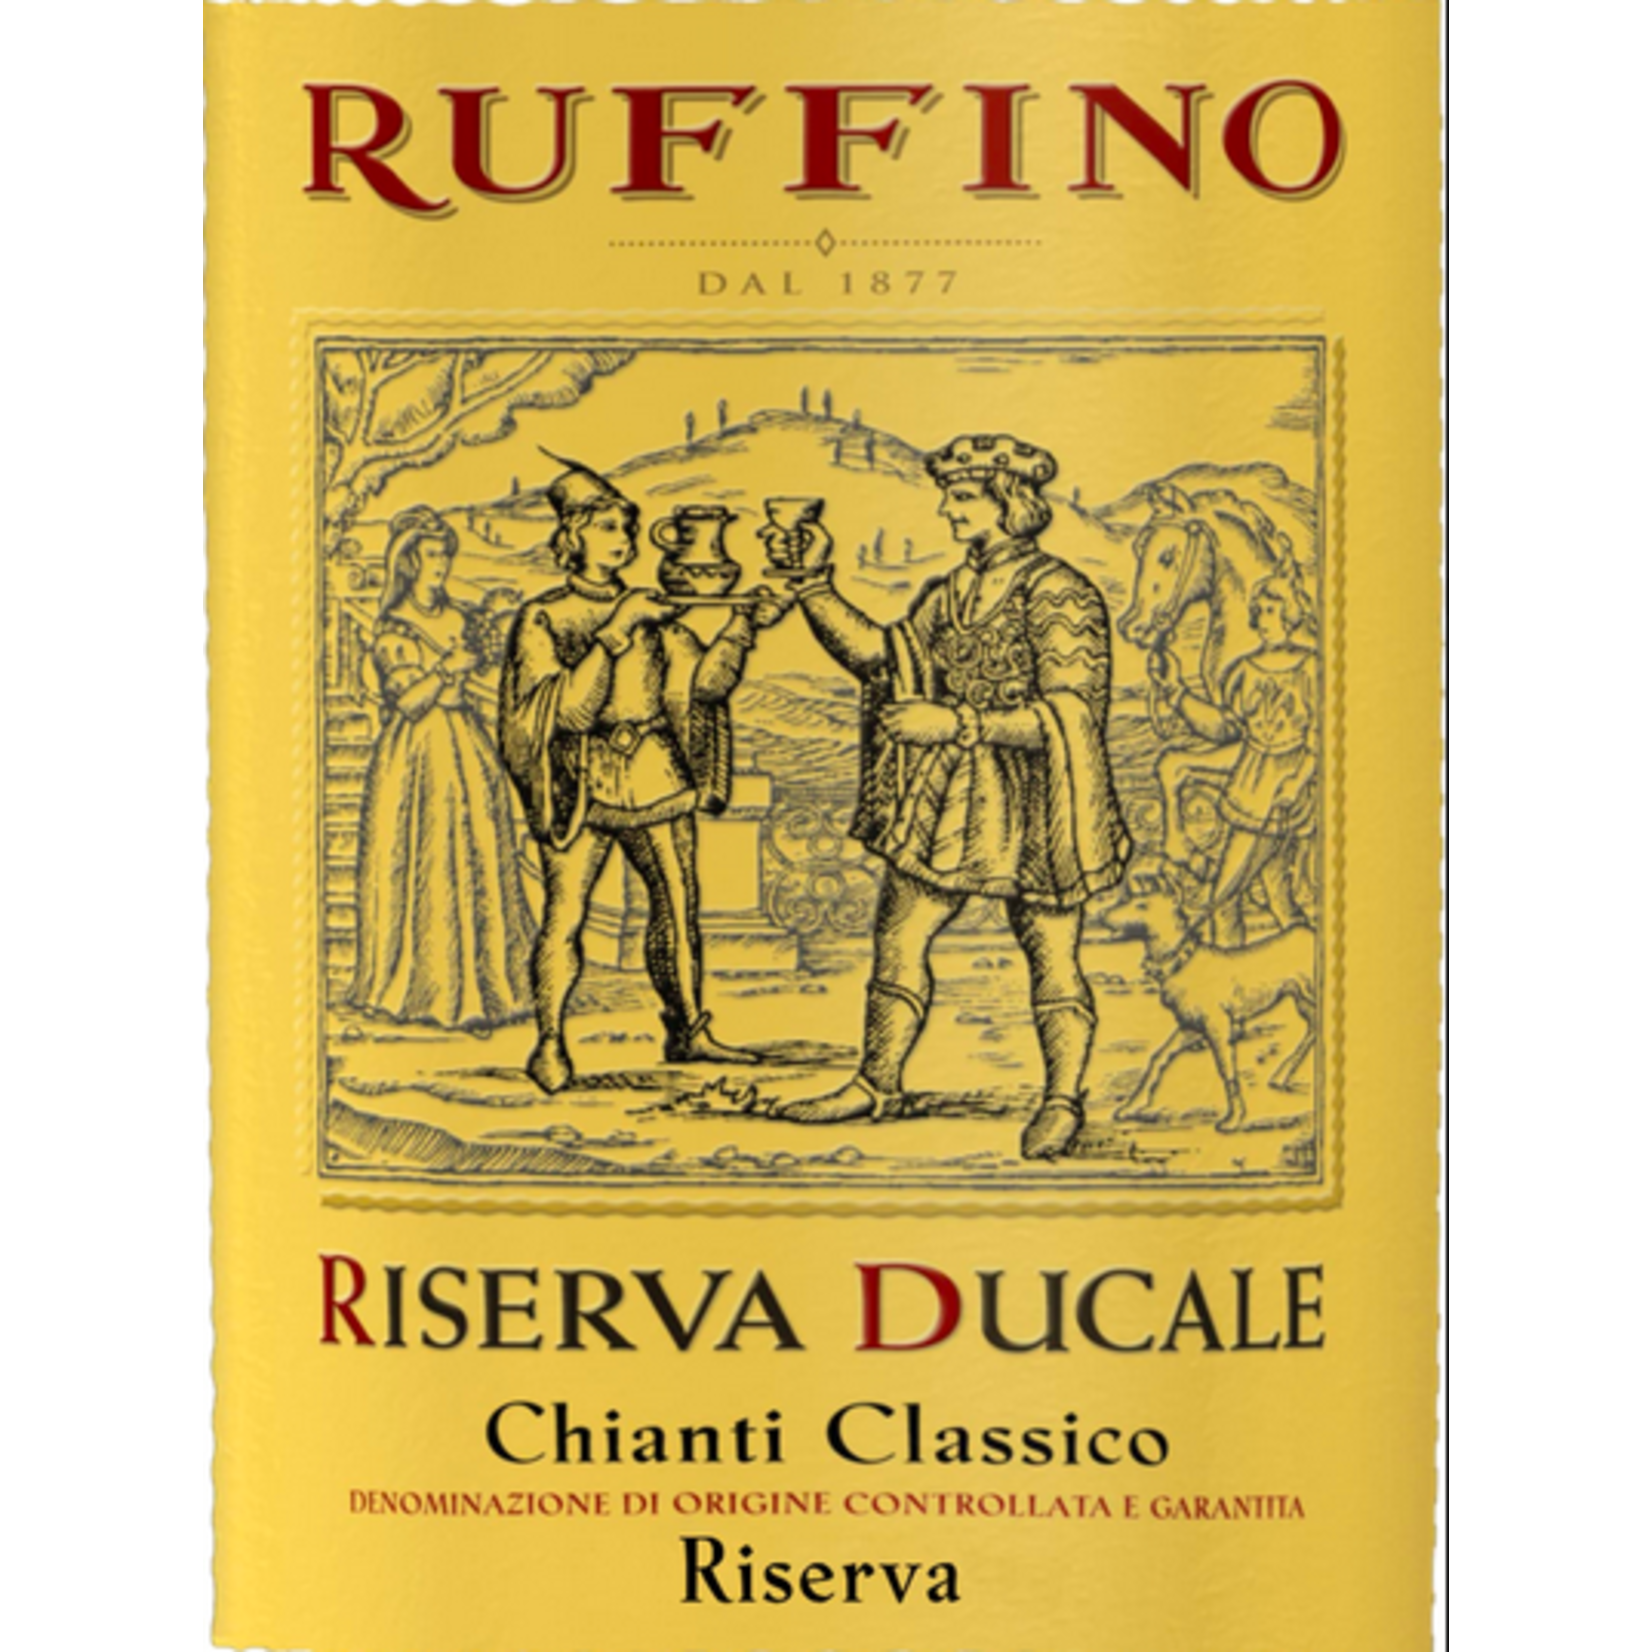 Ruffino Ruffino Ducale Chianti Classico Riserva Tan 2018  Tuscany, Italy